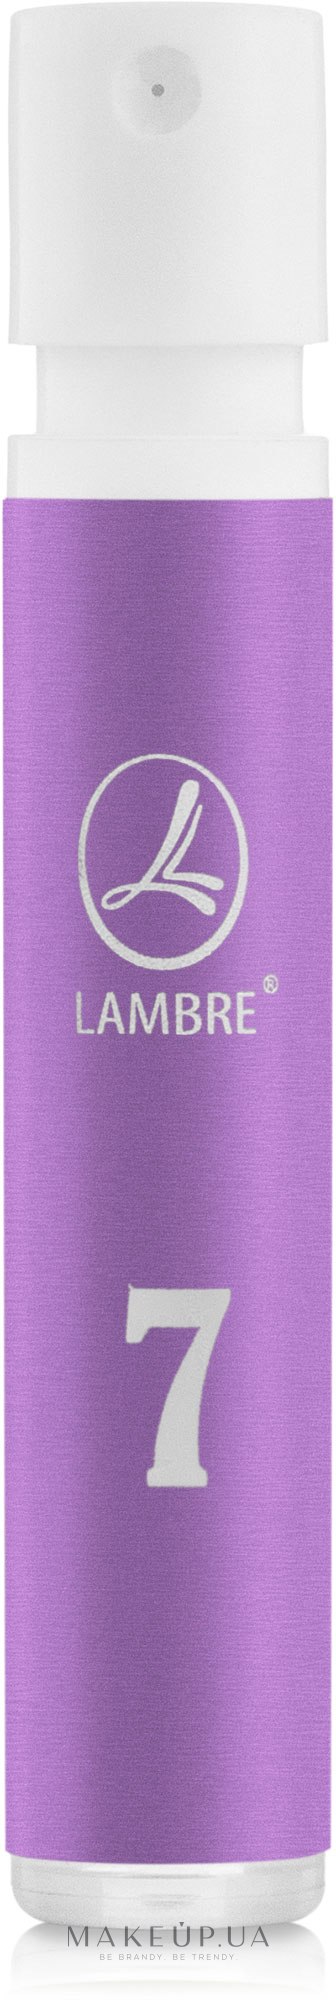 Lambre № 7 - Парфуми (пробник) — фото 1.2ml